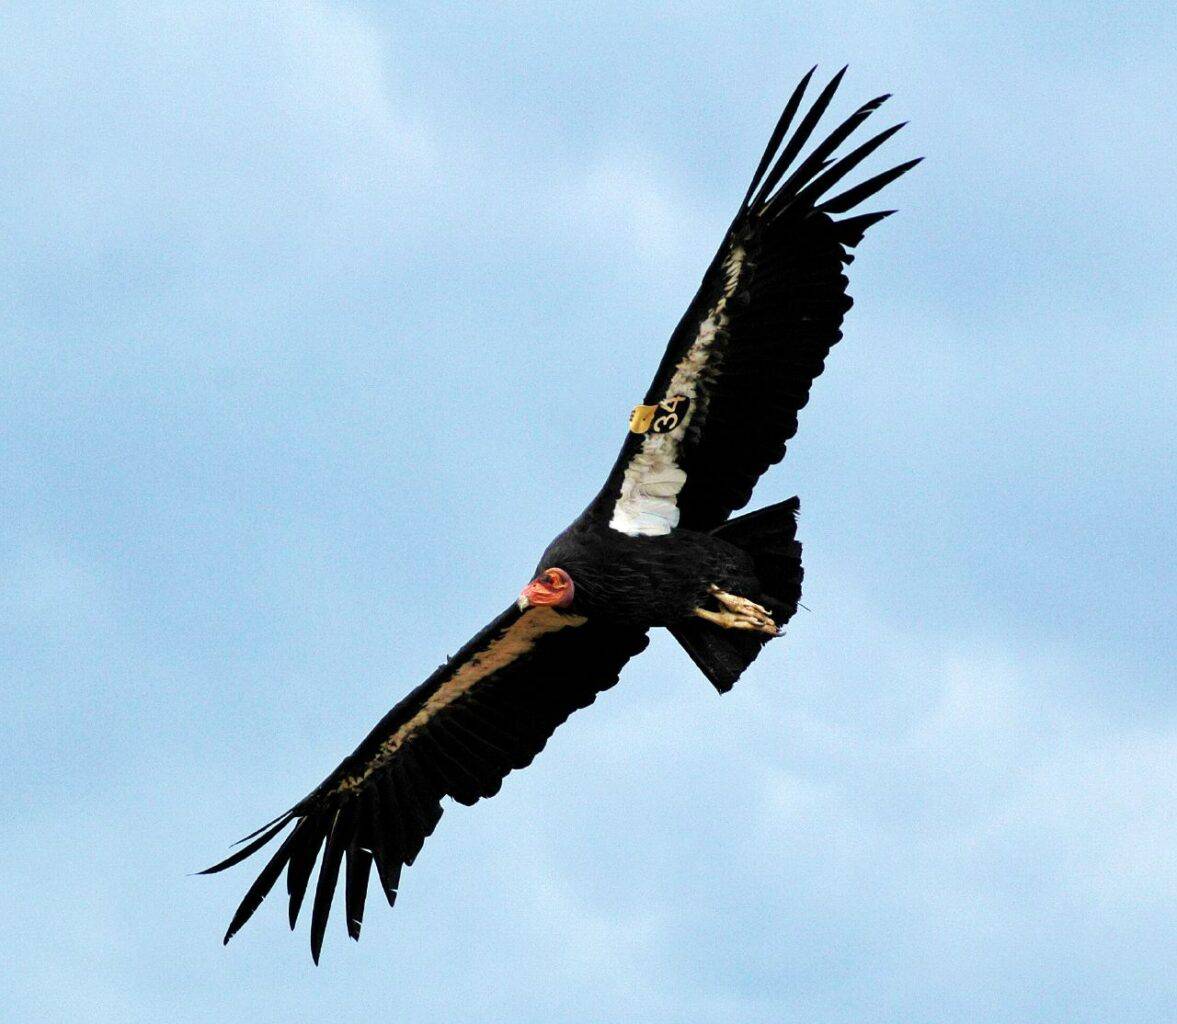 California Condor in flight.